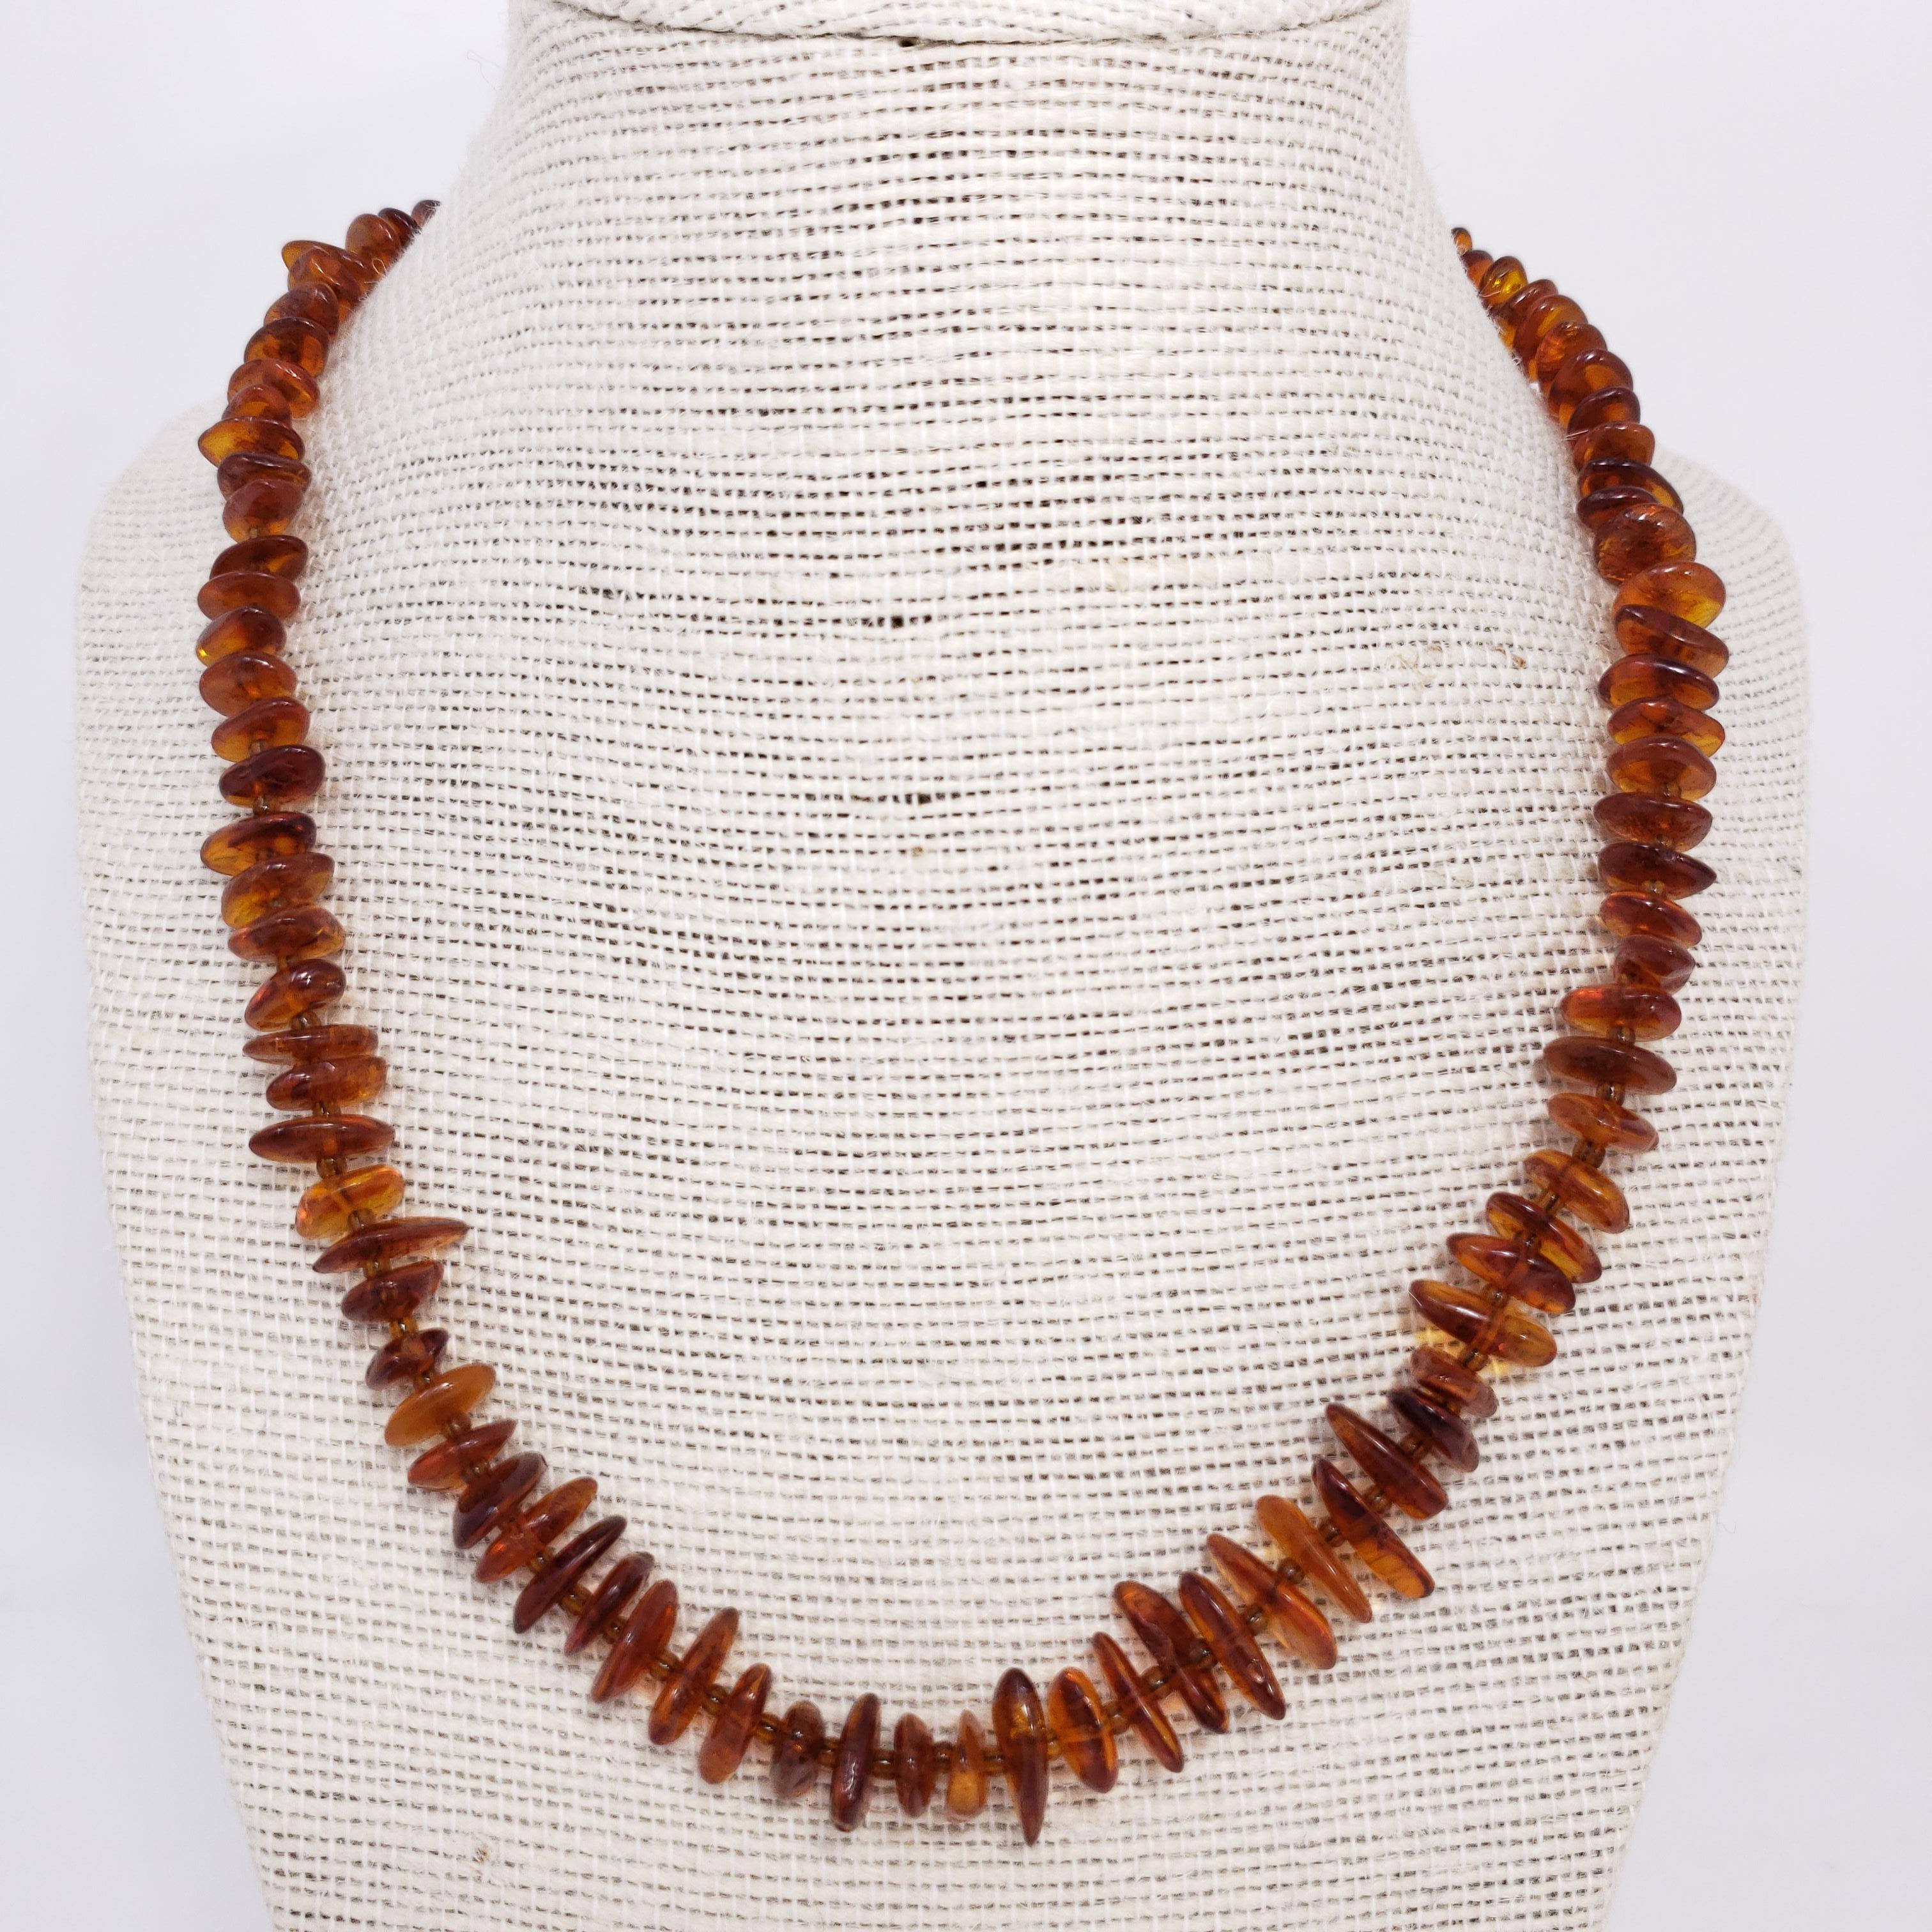 Collier russe exquis, composé de perles plates d'ambre de la Baltique d'un magnifique ton orange foncé, avec des perles d'espacement plus petites en alternance.

Vers le milieu du 20e siècle.
